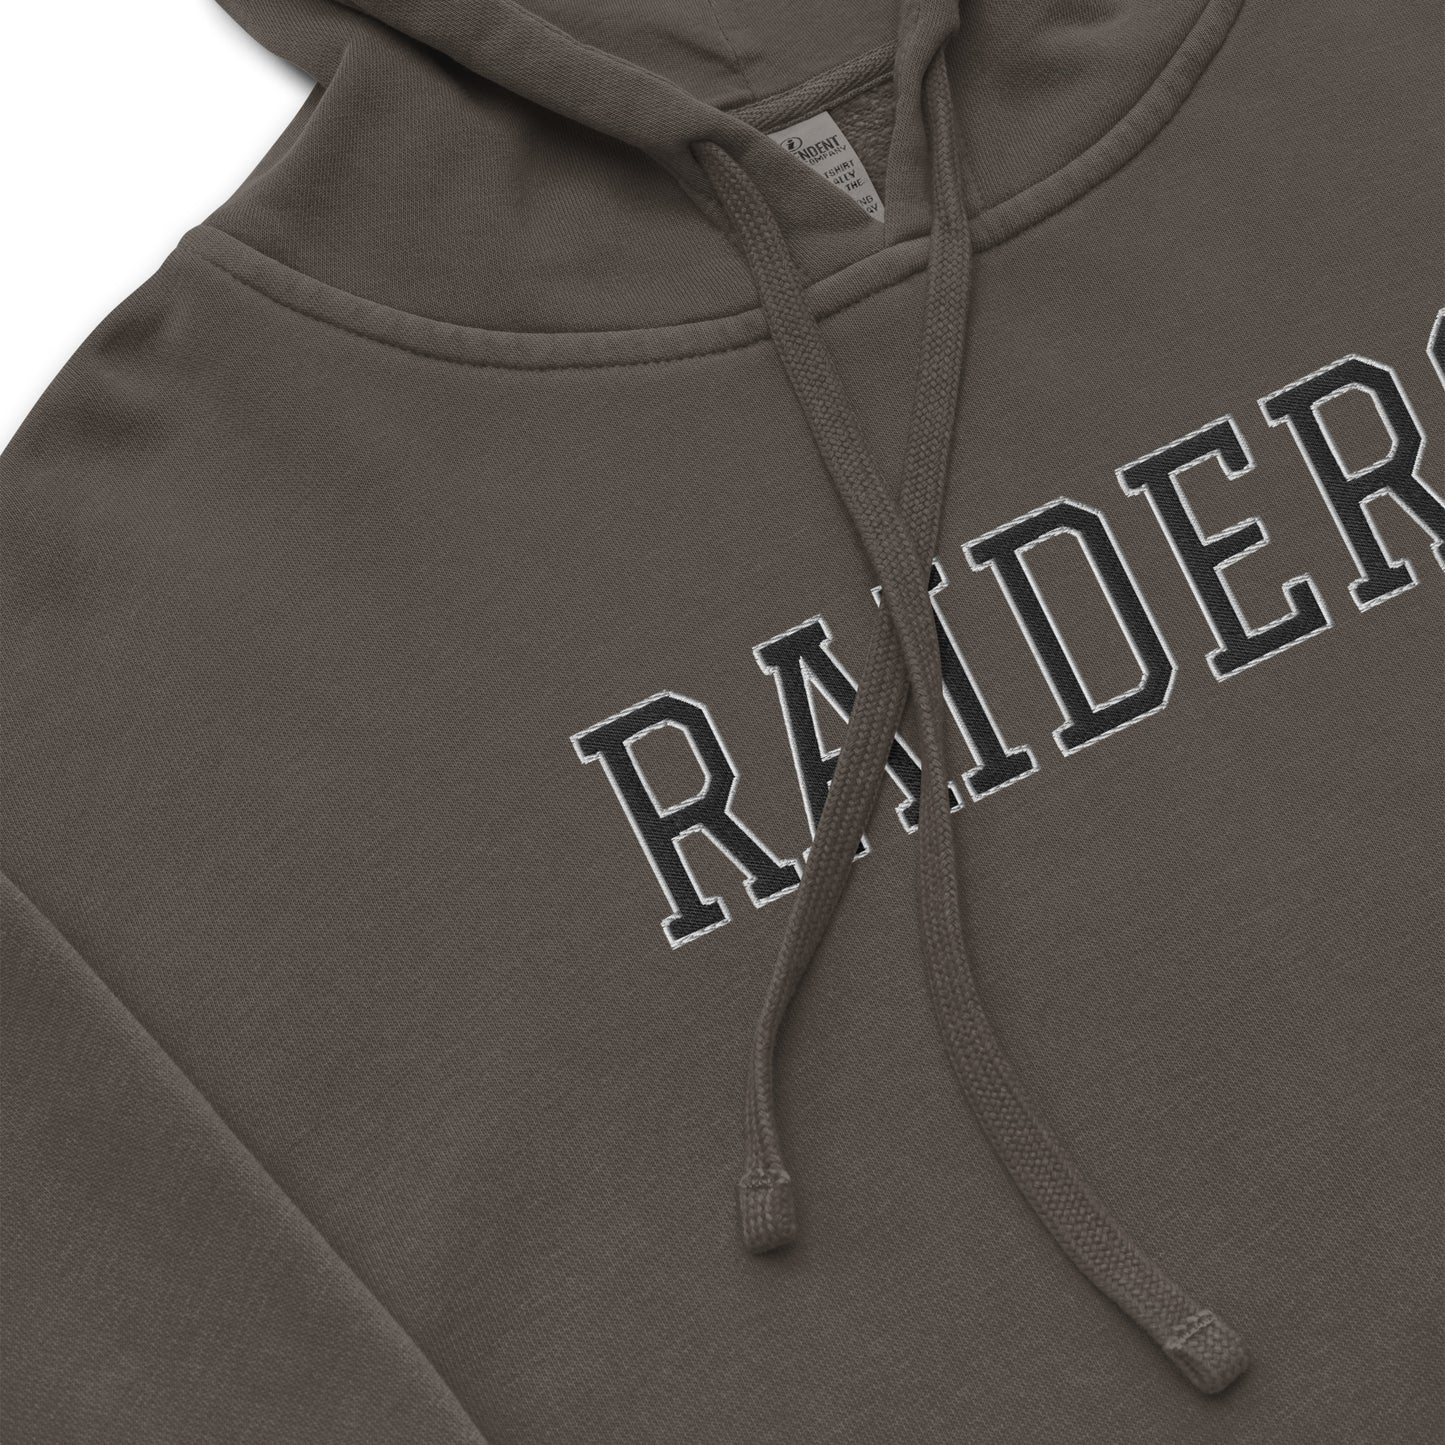 Raiders Embroidered Vintage Wash Hoodie